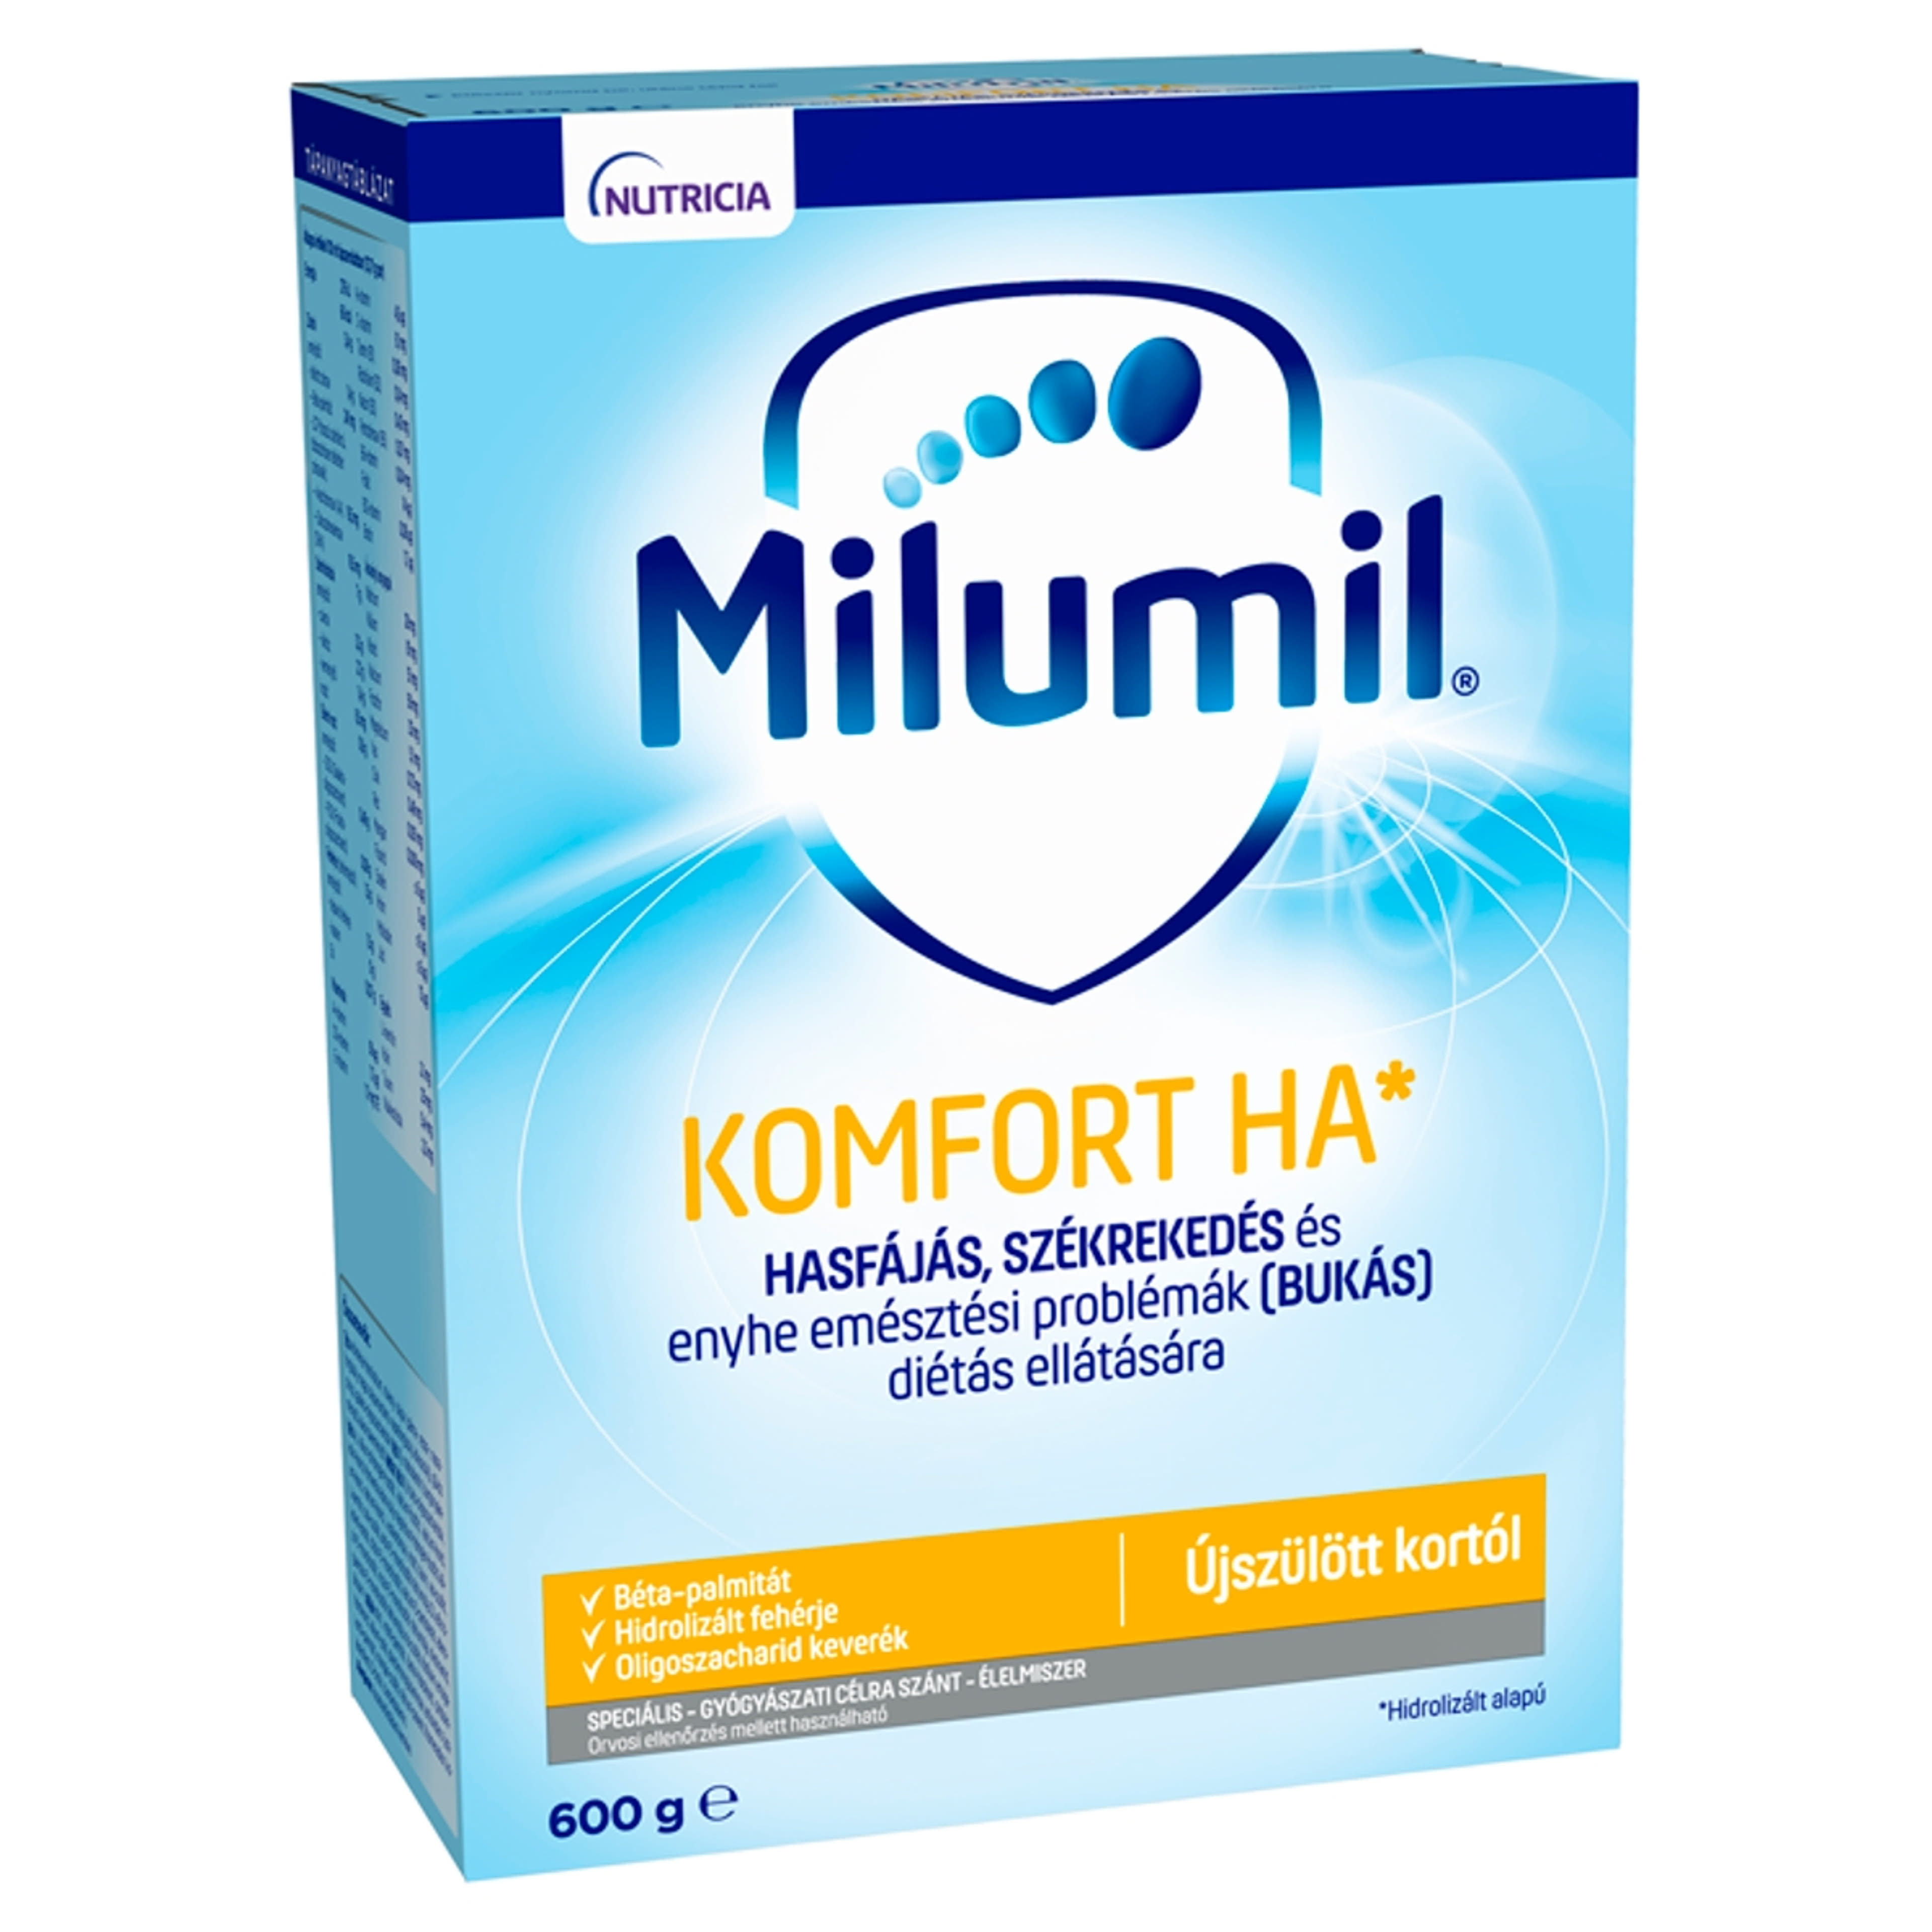 Milumil Komfort HA 1 speciális gyógyászati célra szánt élelmiszer 0 hónapos kortól - 600 g